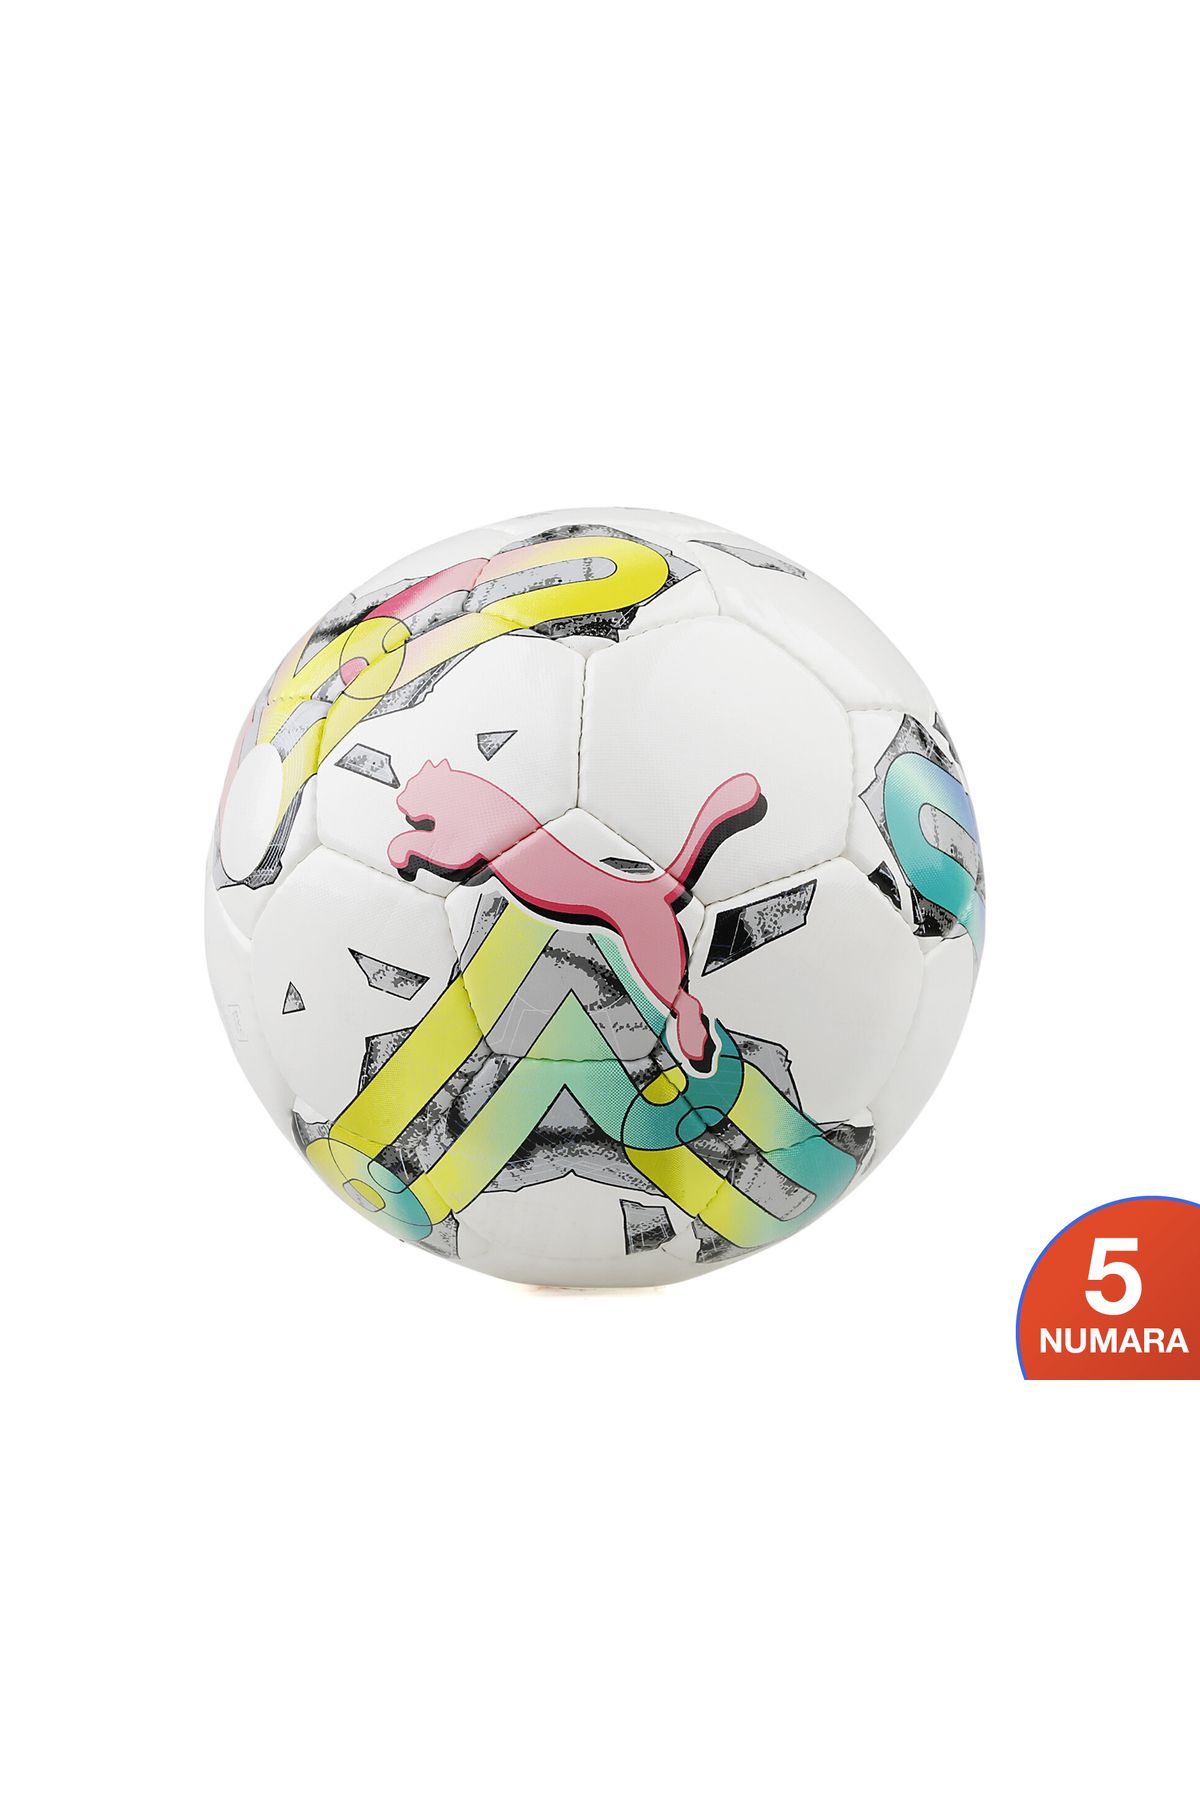 Puma Orbita 5 Hs Futbol Topu Renkli